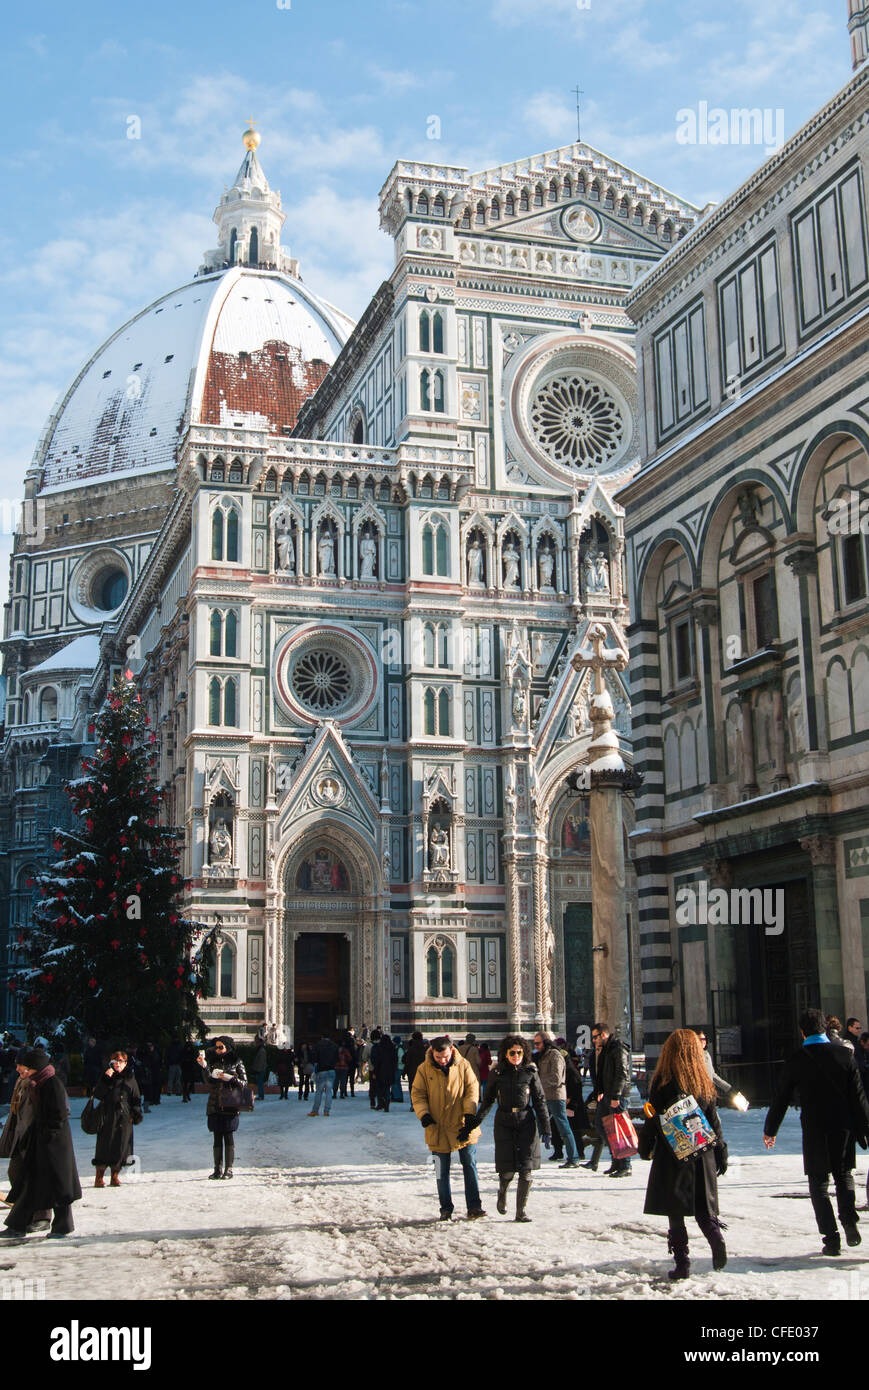 Il Duomo con la neve durante l'inverno, Firenze (Firenze), il Sito Patrimonio Mondiale dell'UNESCO, Toscana, Italia, Europa Foto Stock